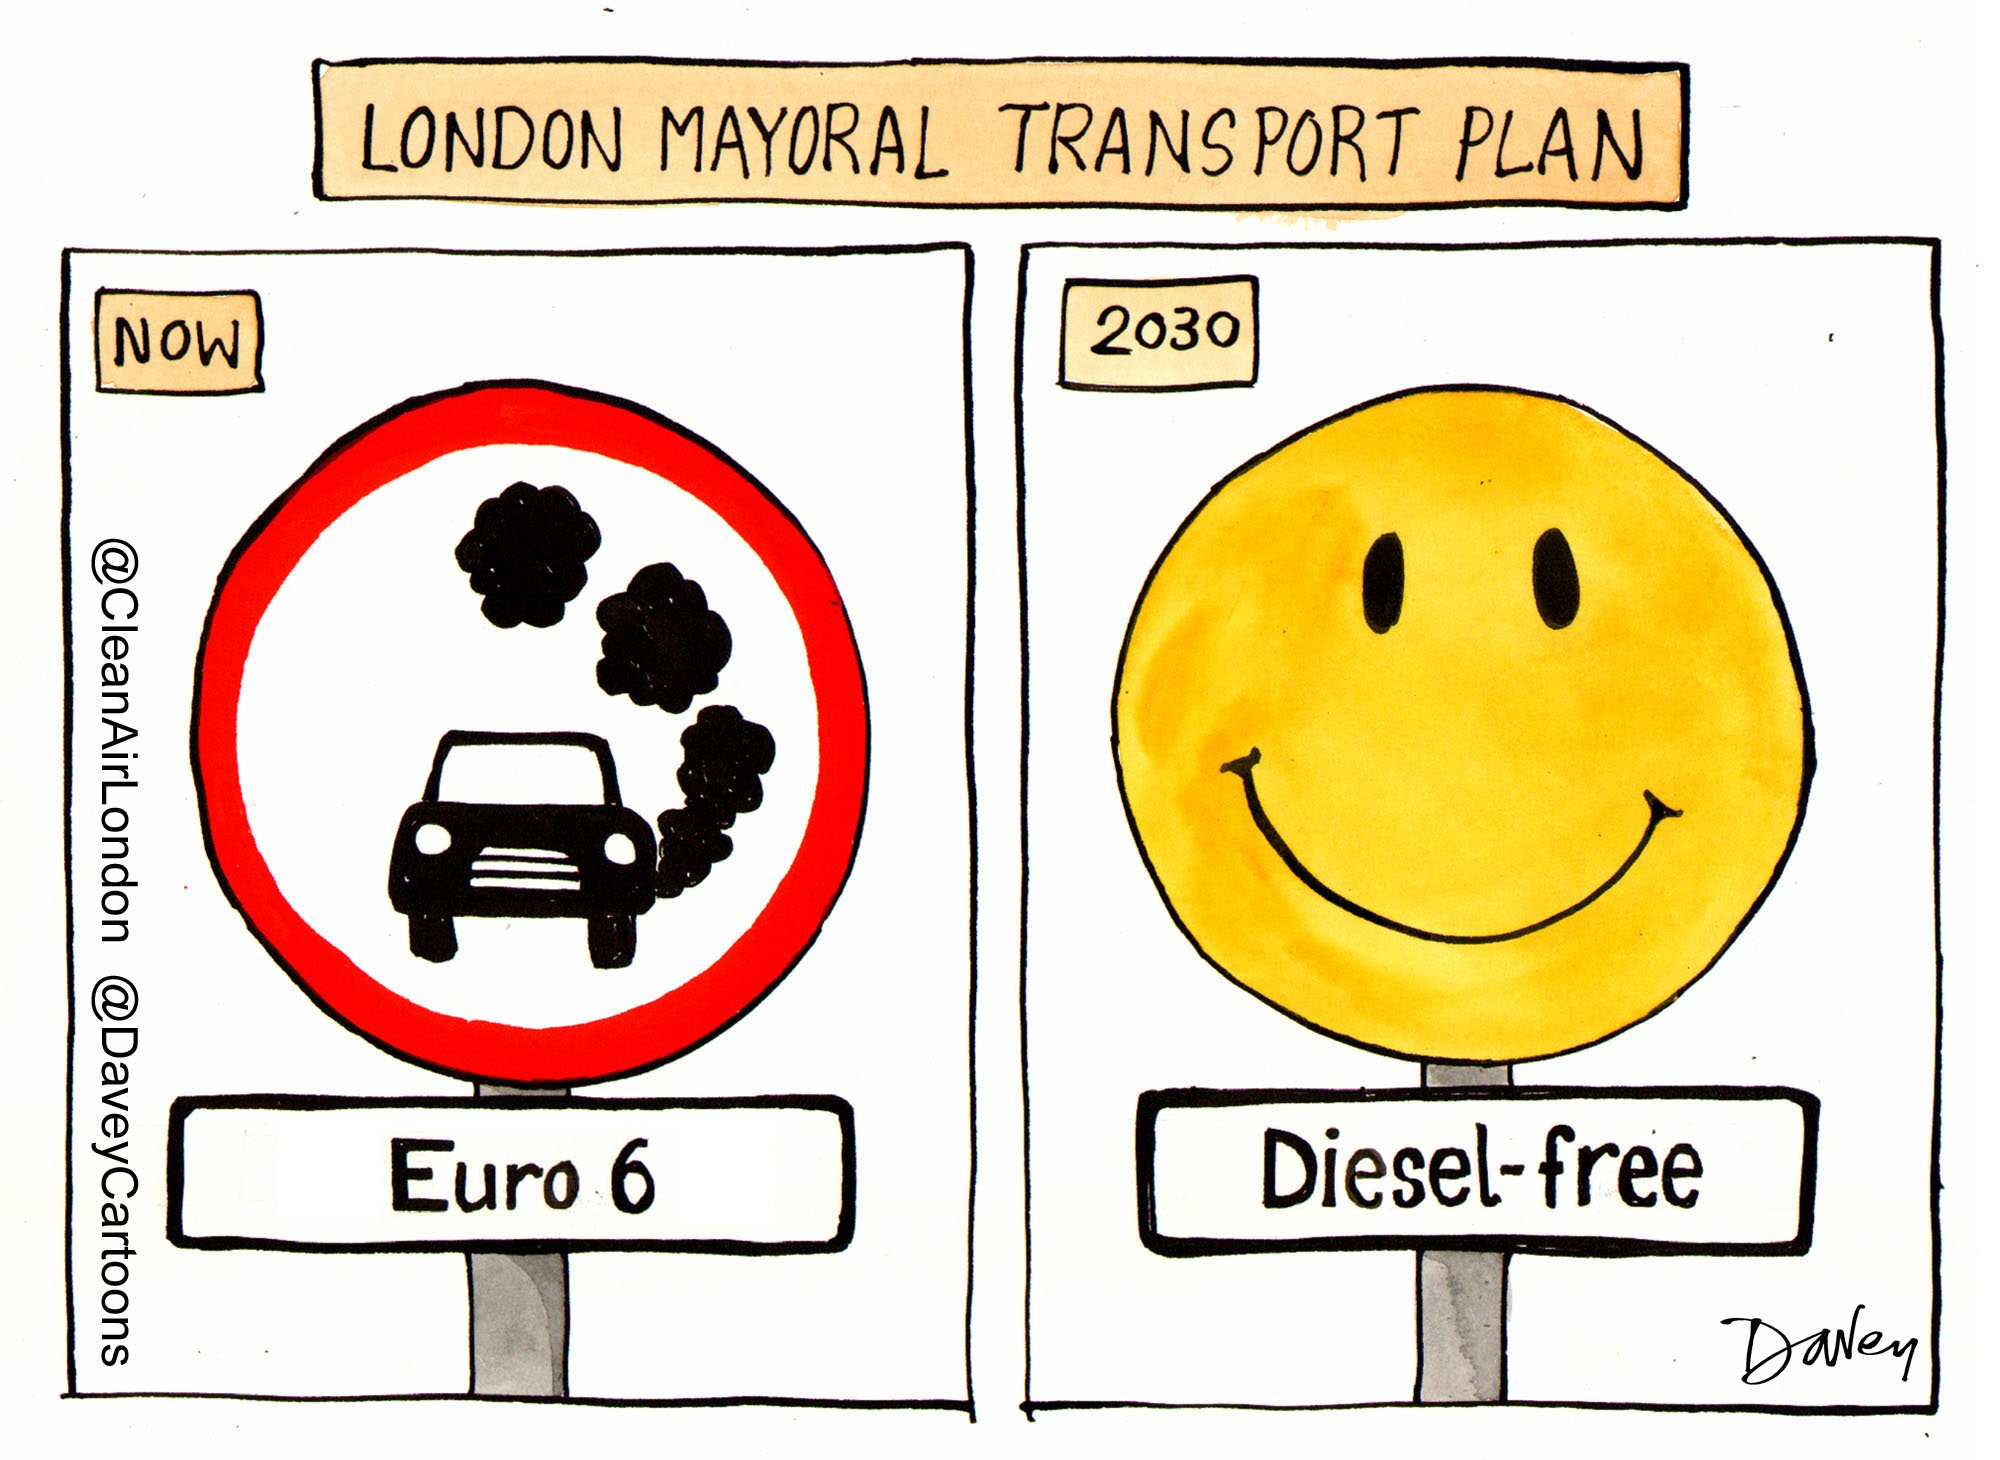 London must be ‘diesel-free’ by 2030